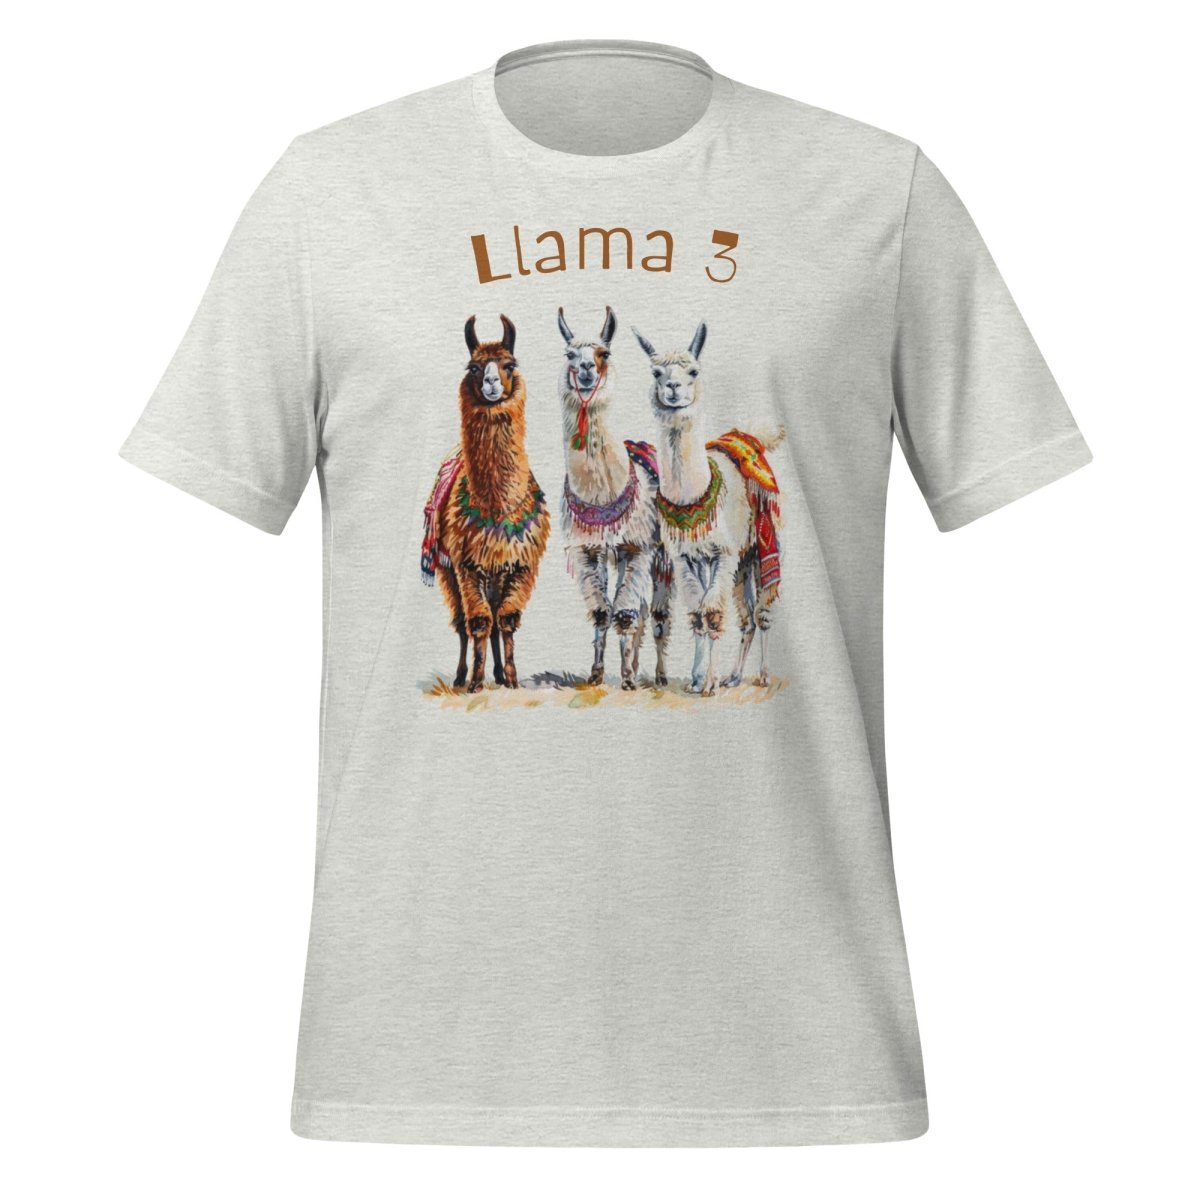 3 Llama 3 Llamas T - Shirt (unisex) - Ash - AI Store